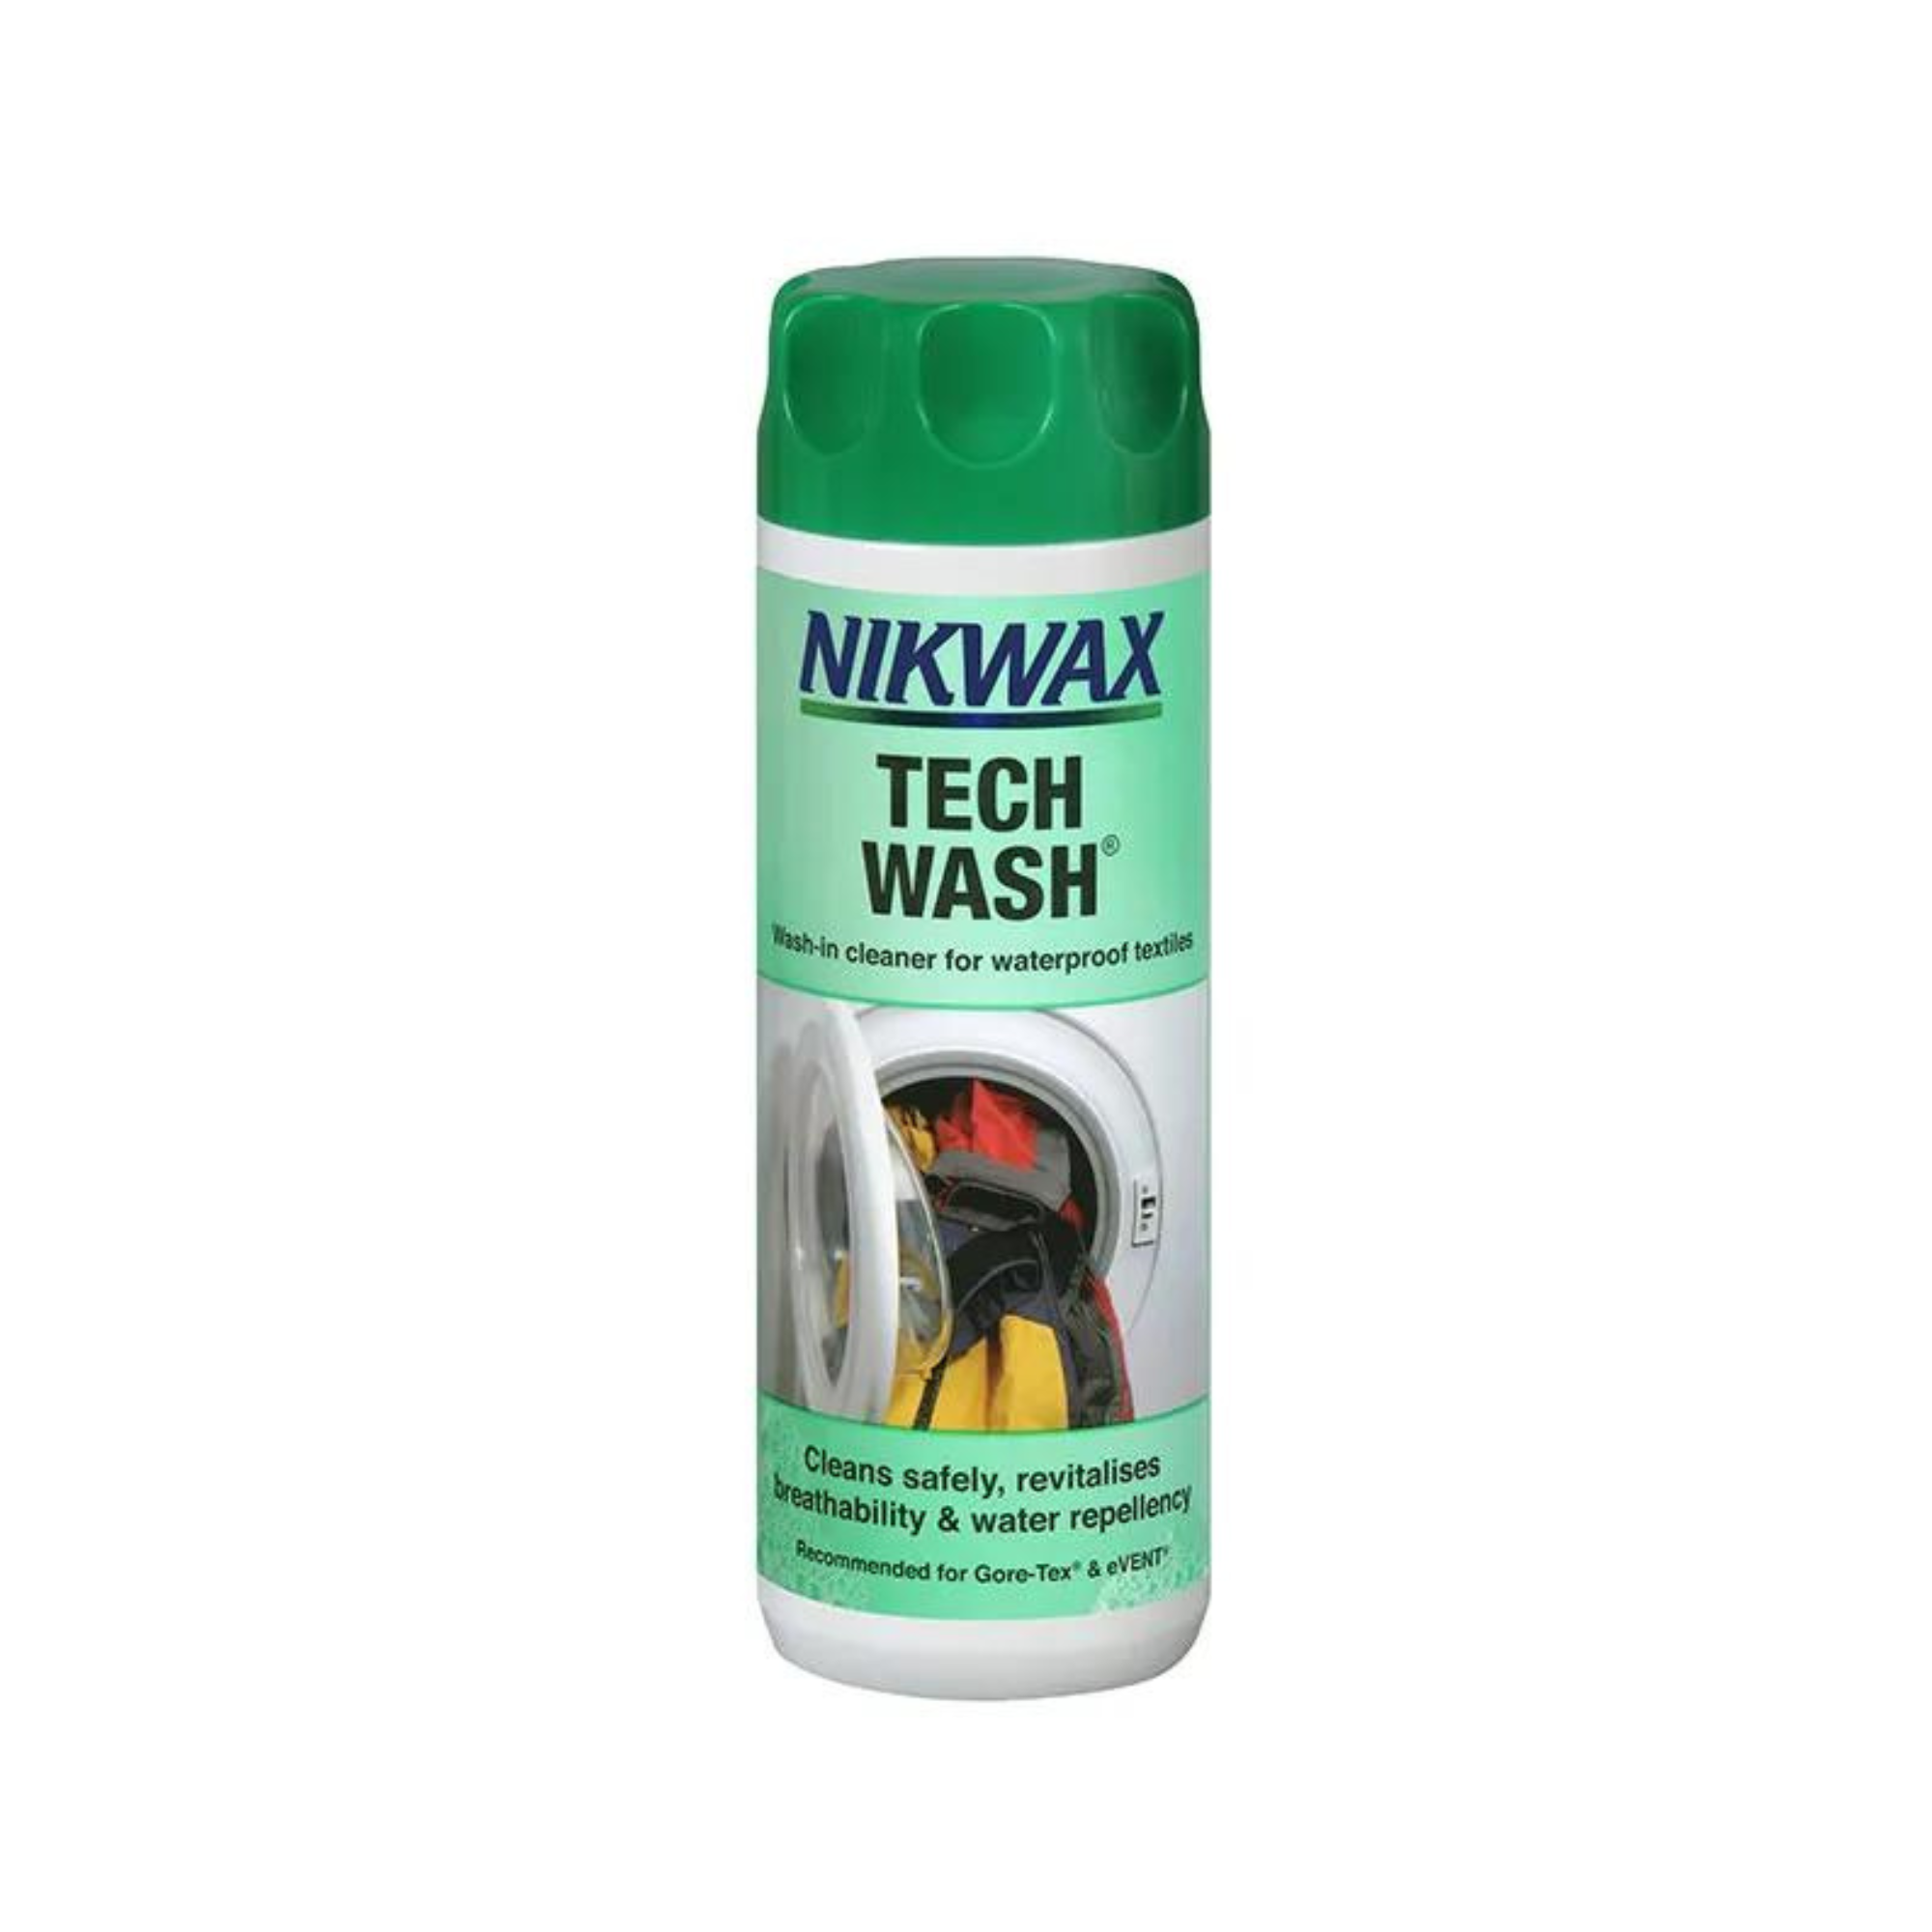 Nixwax Tech Wash - 300ml